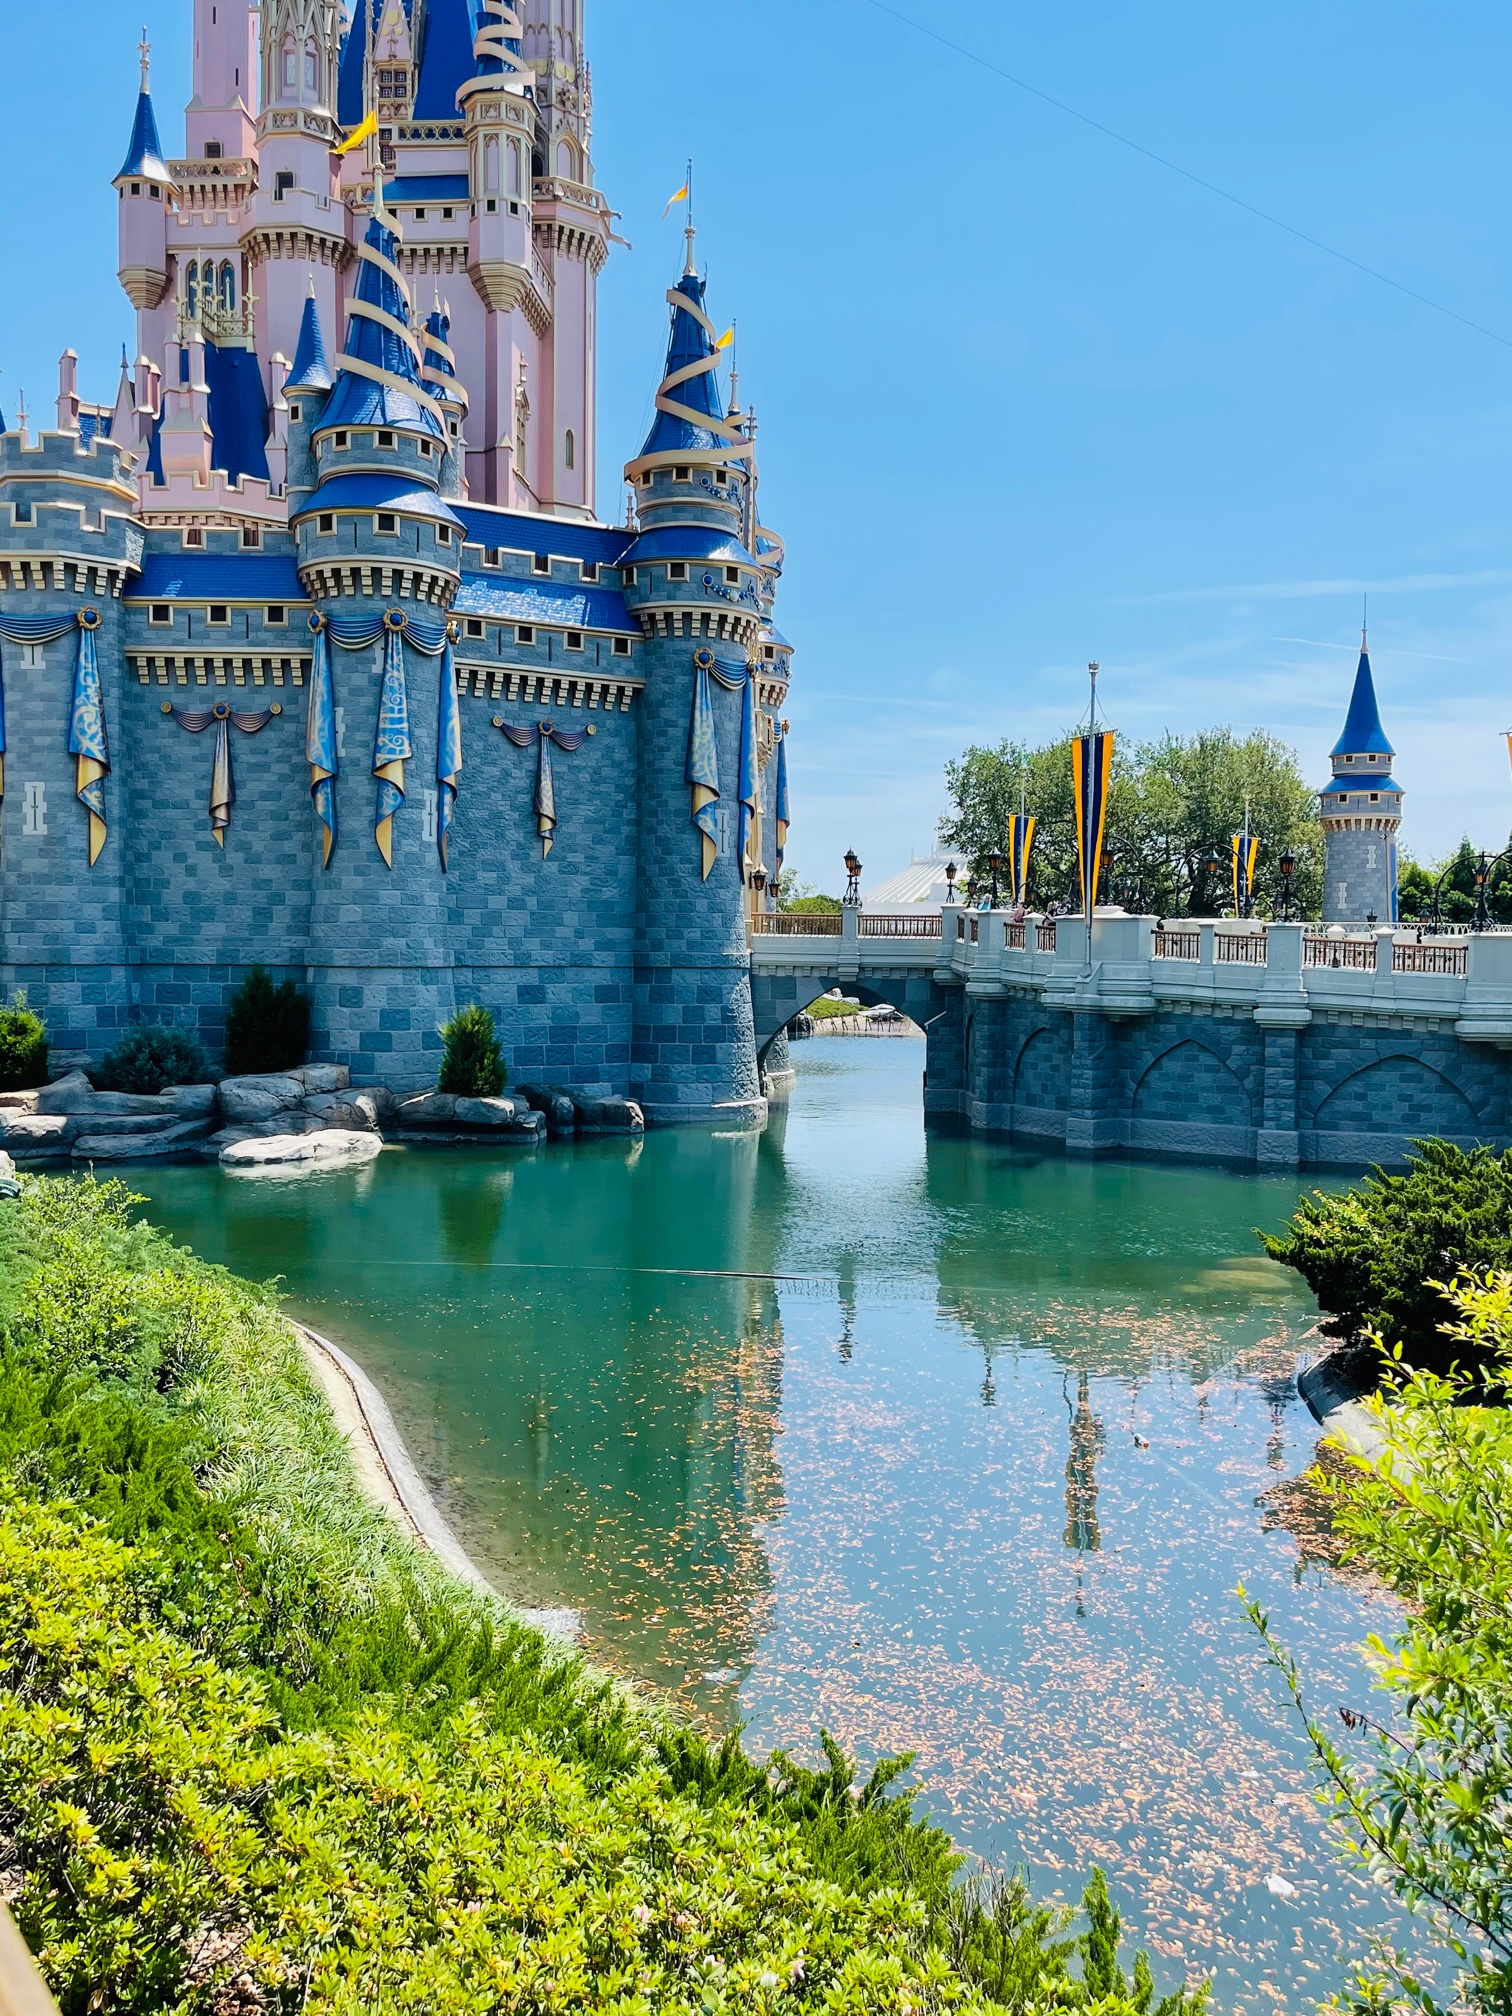 Cinderella Castle water